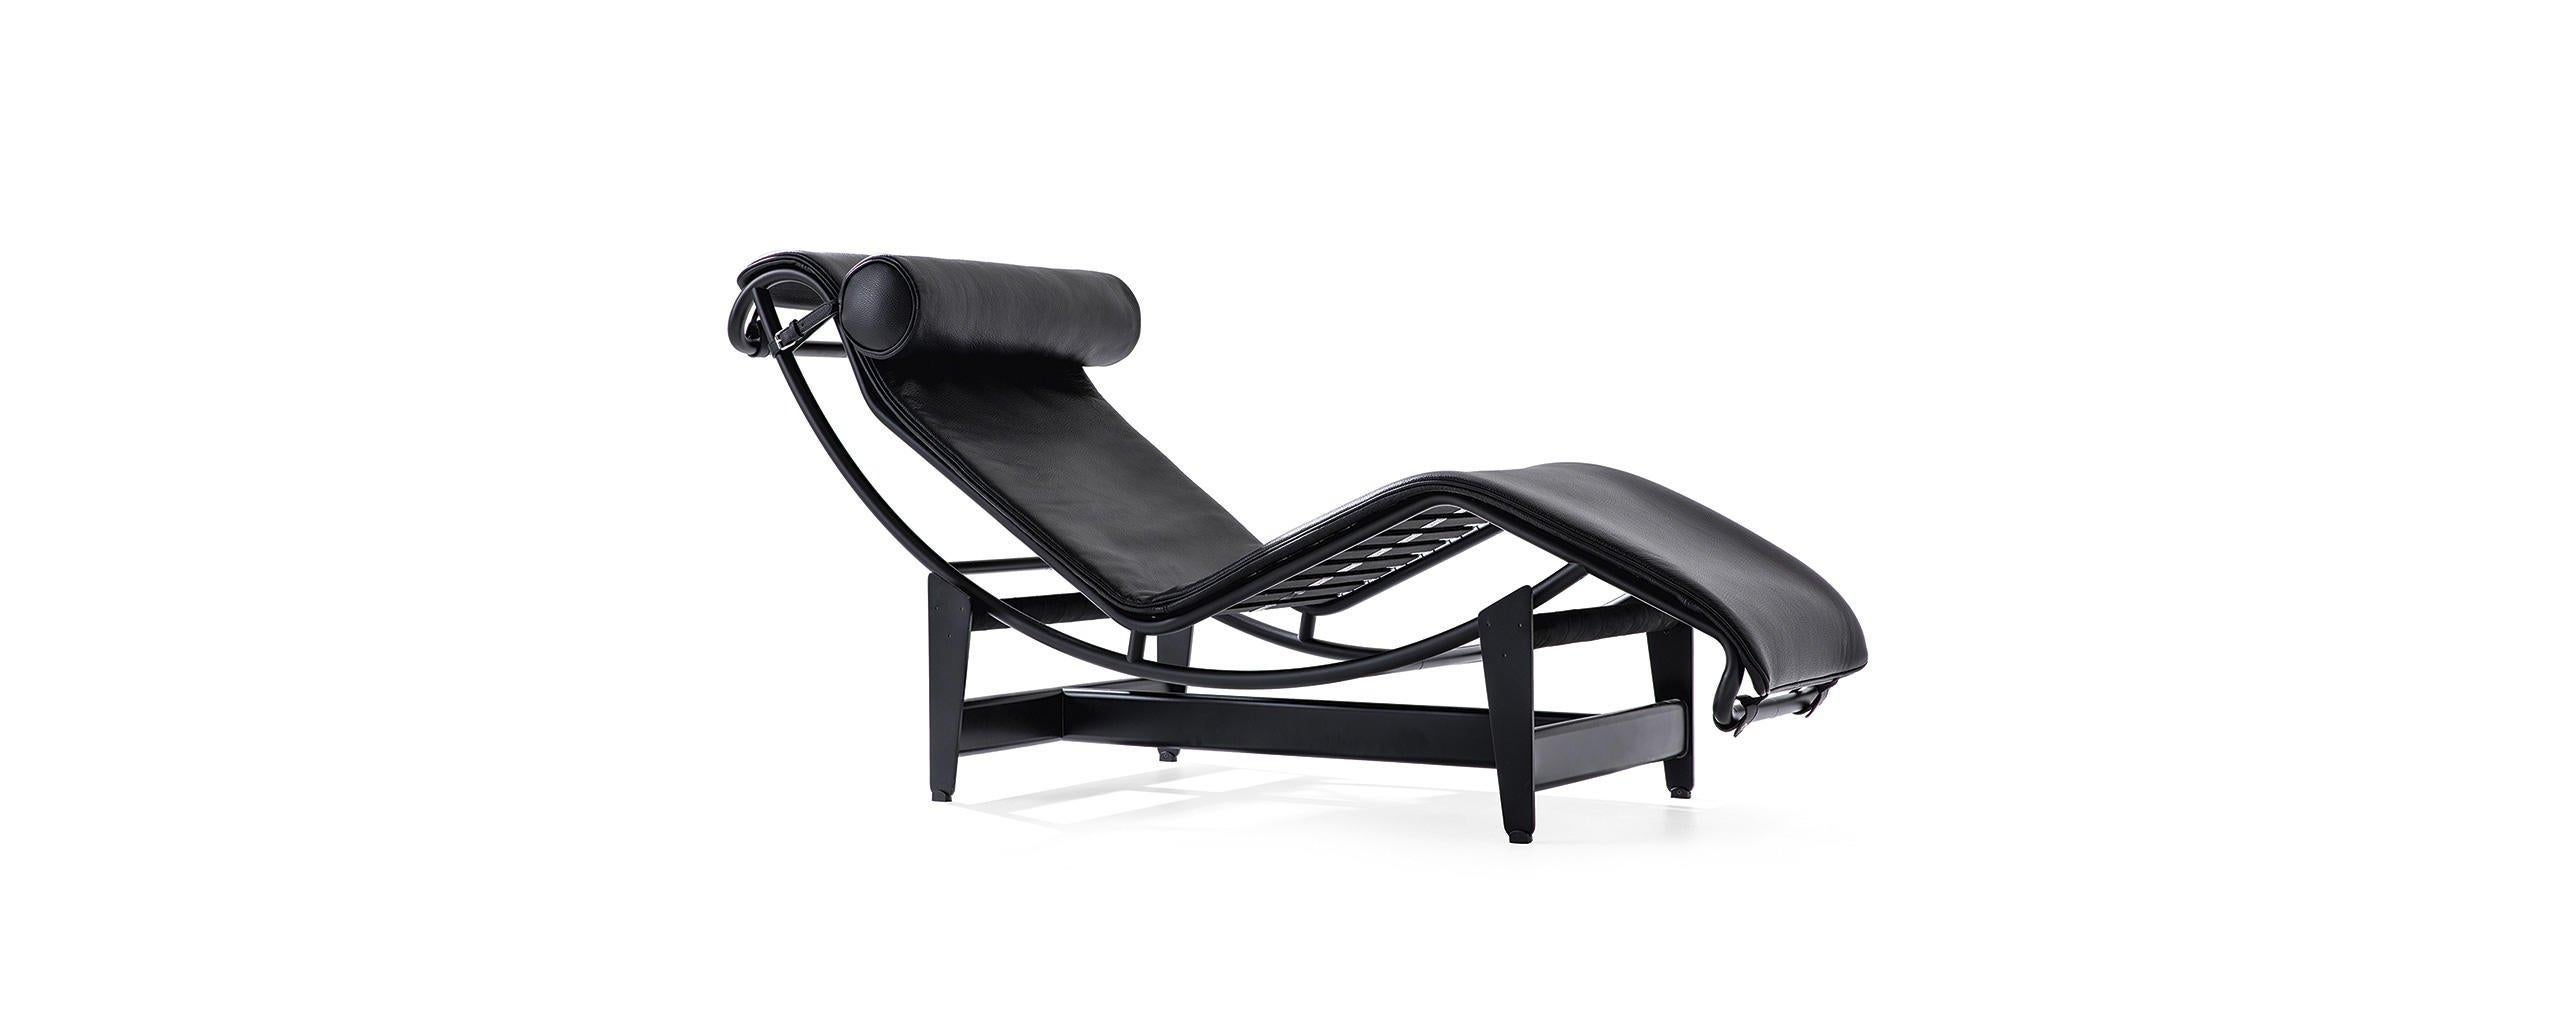 Chaise longue conçue par Le Corbusier, Pierre Jeanneret, Charlotte Perriand en 1965. Relancé en 2019.
Fabriqué par Cassina en Italie.

L'un des best-sellers mondiaux de Cassina, la LC4 est la quintessence de la chaise longue. Conçue en 1928, elle